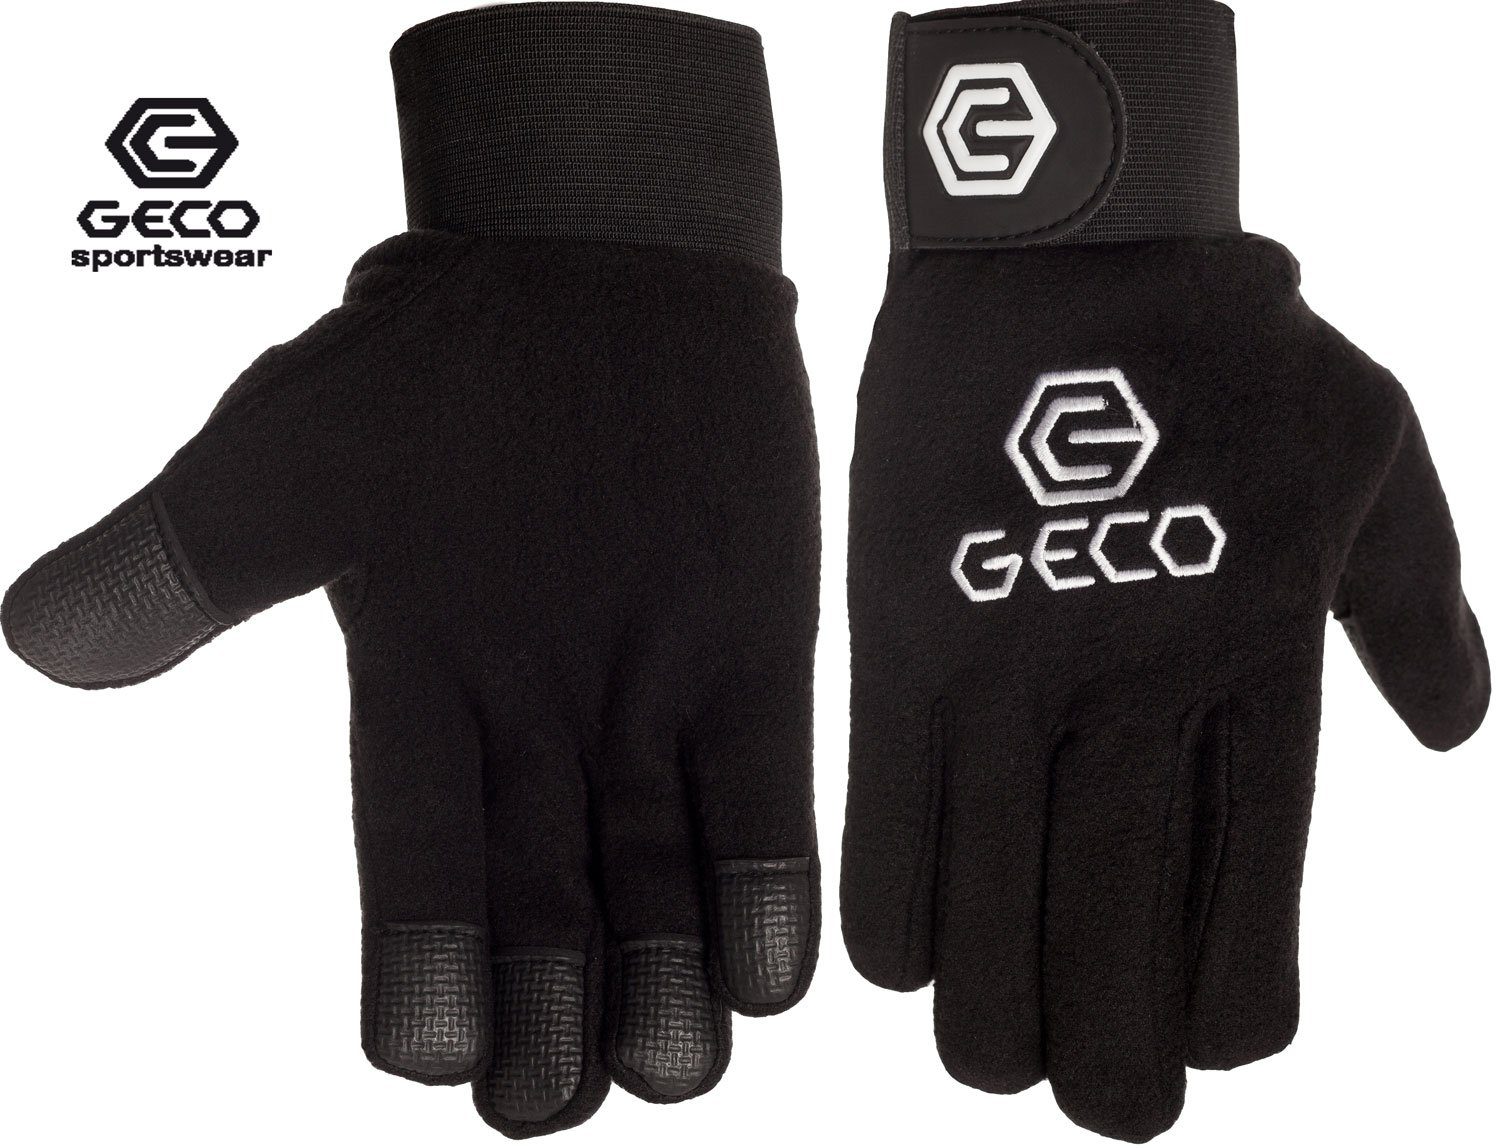 Geco Sportswear Feldspielerhandschuhe Geco Feldspielerhandschuhe Fußball Handschuhe Fleece schwarz